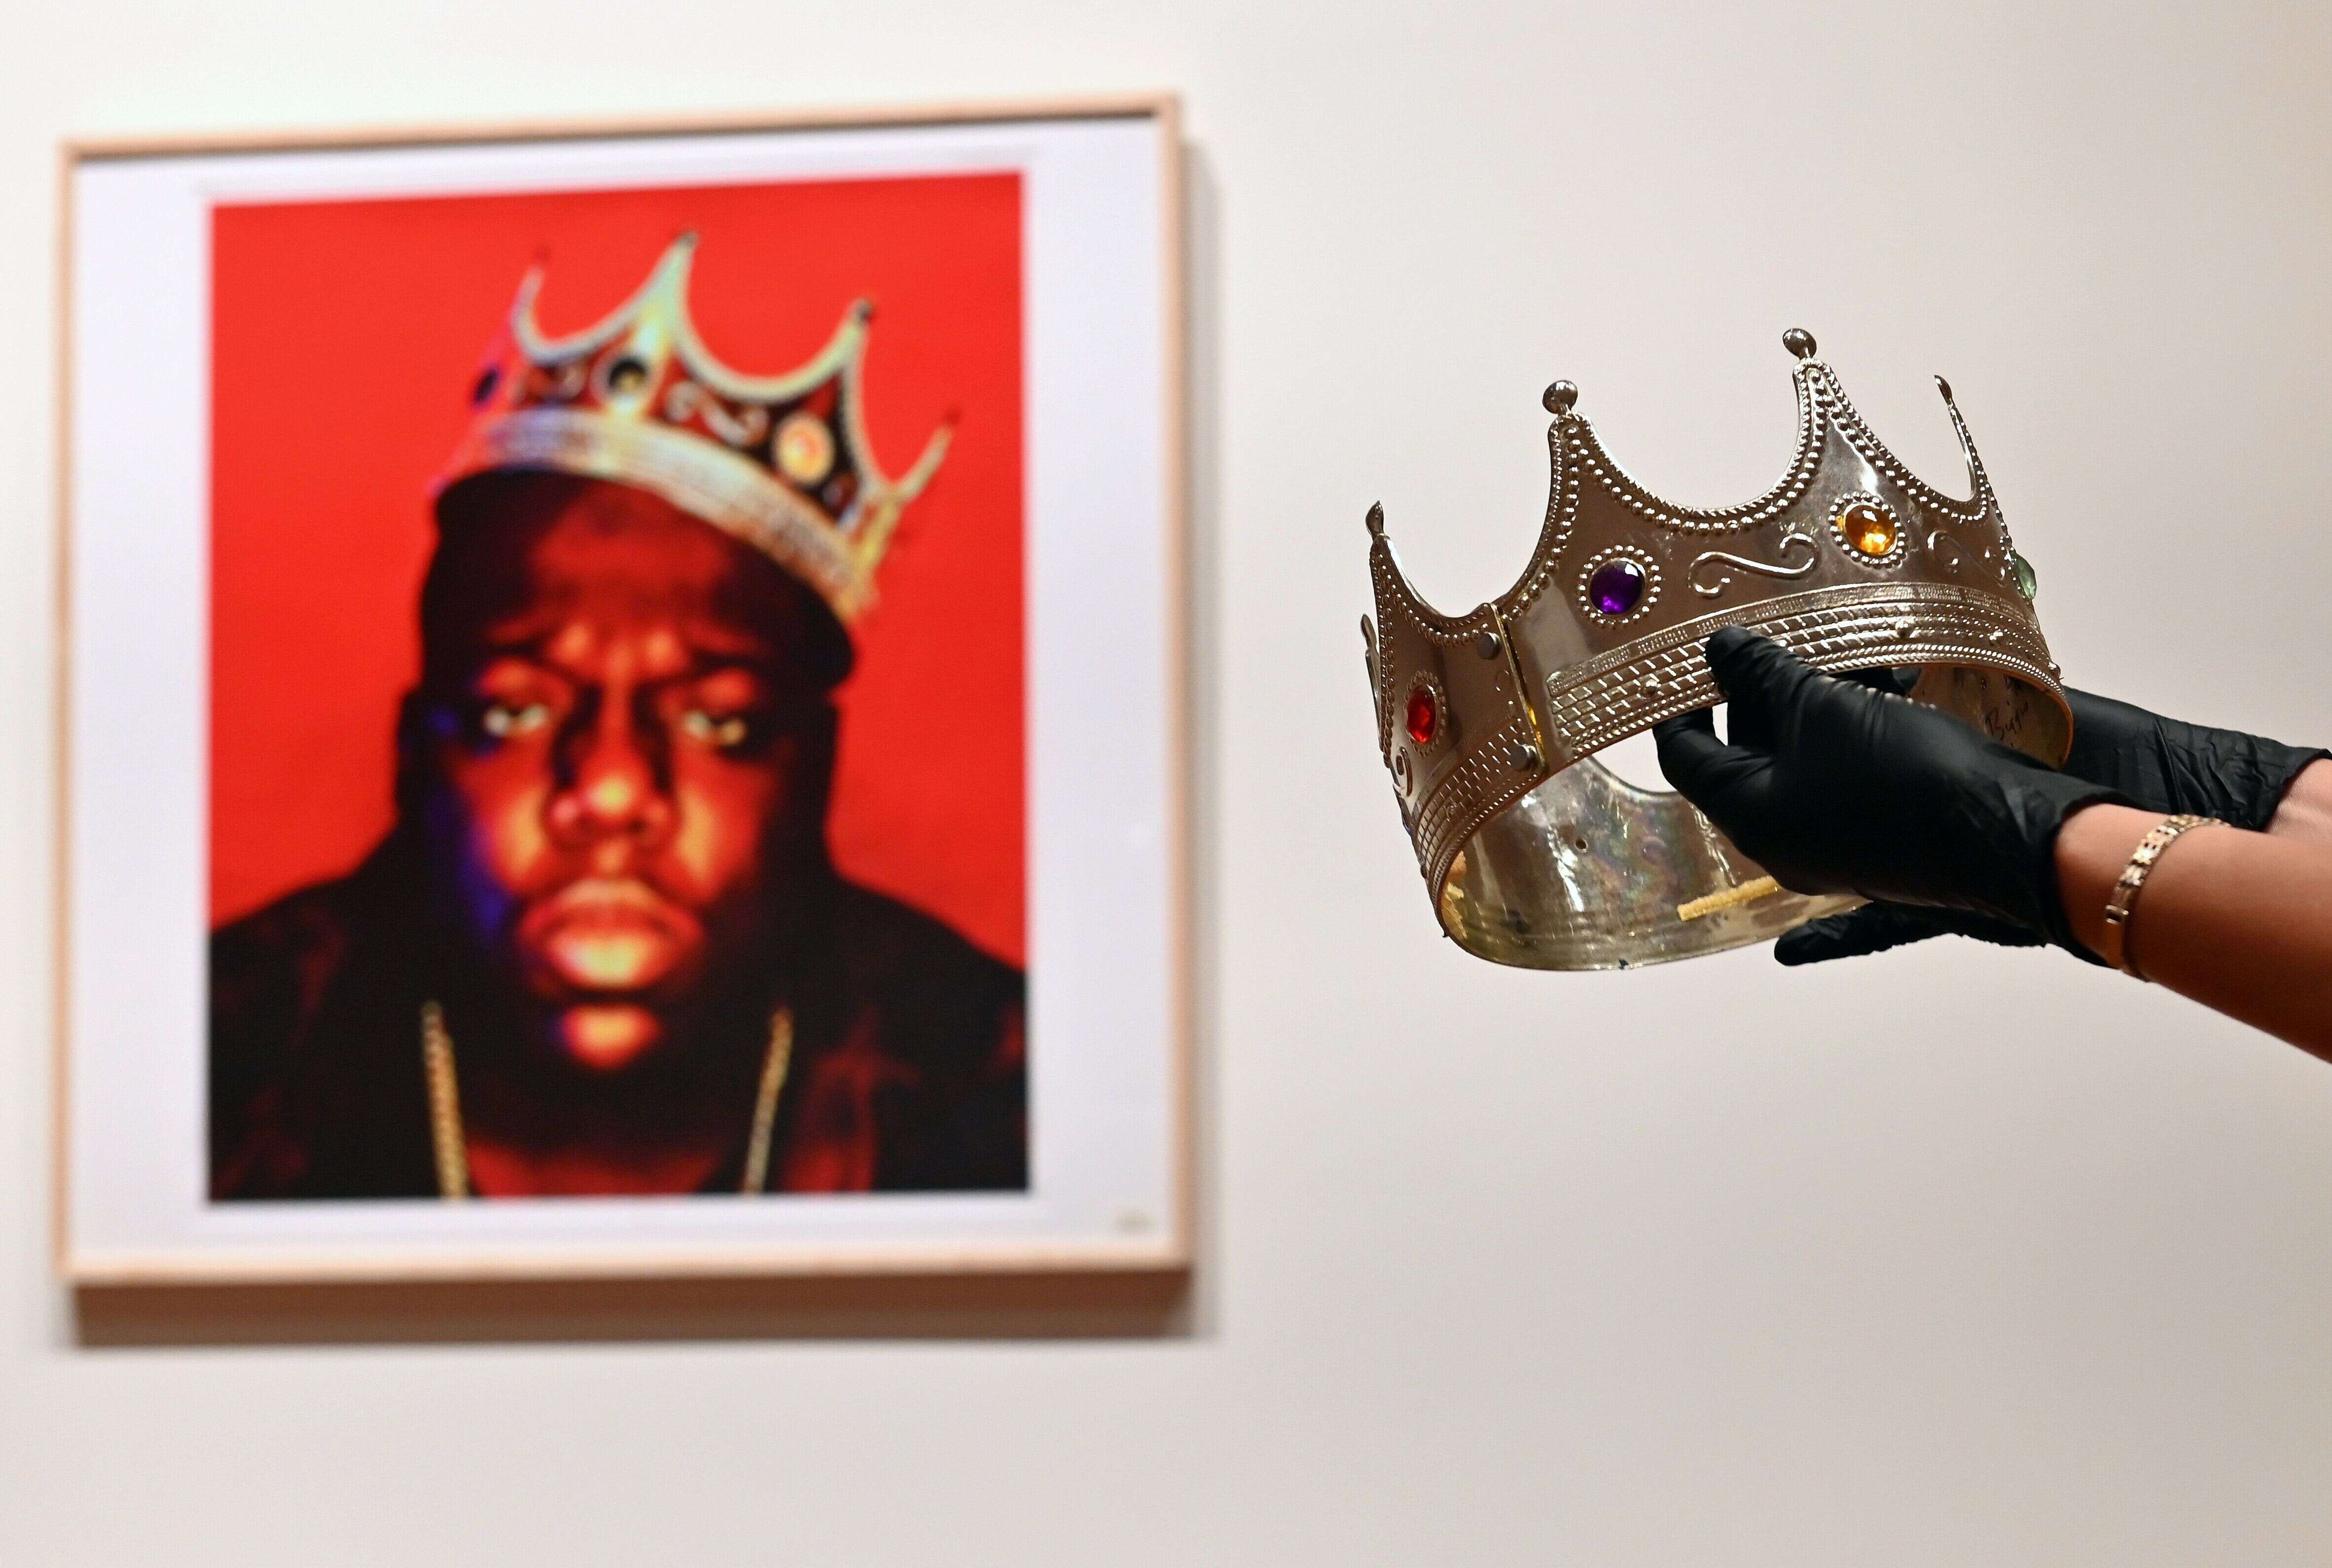 La célèbre couronne en plastique portée par le rappeur Notorious B.I.G a été vendue aux enchères, mardi 15 septembre, pour près d’un demi-millions d’euros.